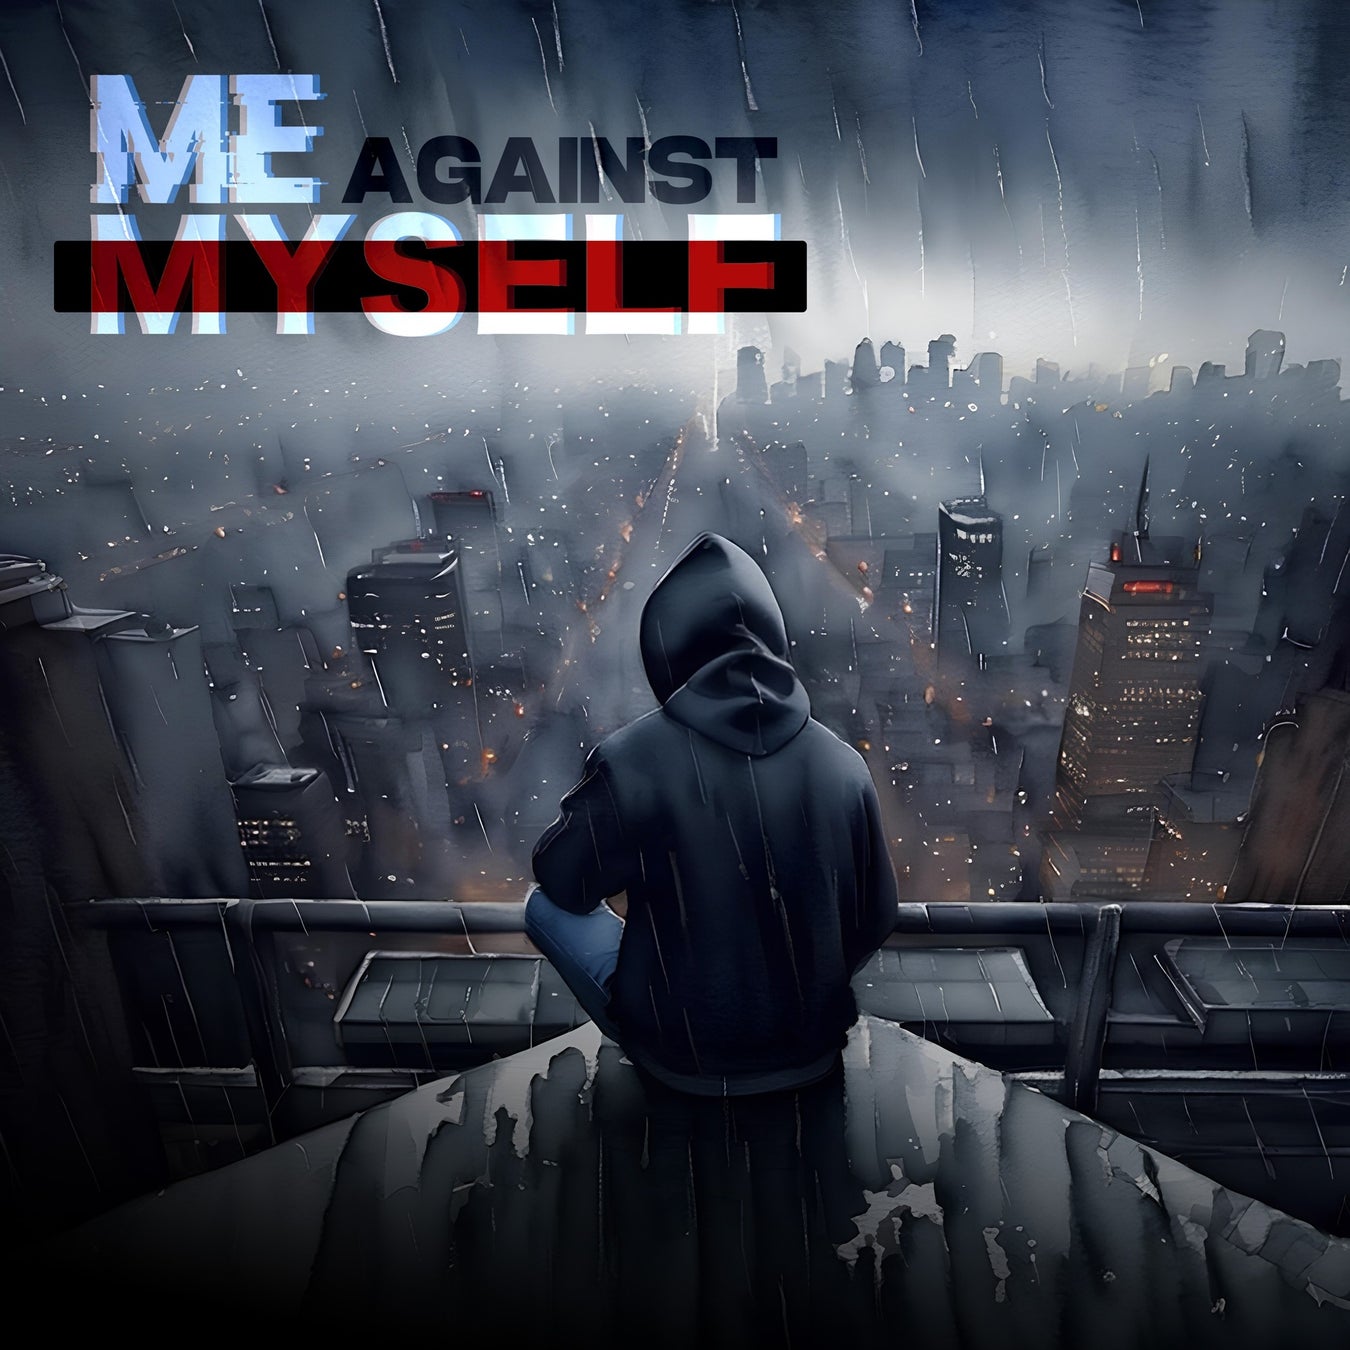 挑戦し続ける者たちの新たな挑戦として立ち上がったプロジェクト、’Trymatic’（読み：トライマティック）が記念すべき第一作目『Me Against Myself』をリリース!